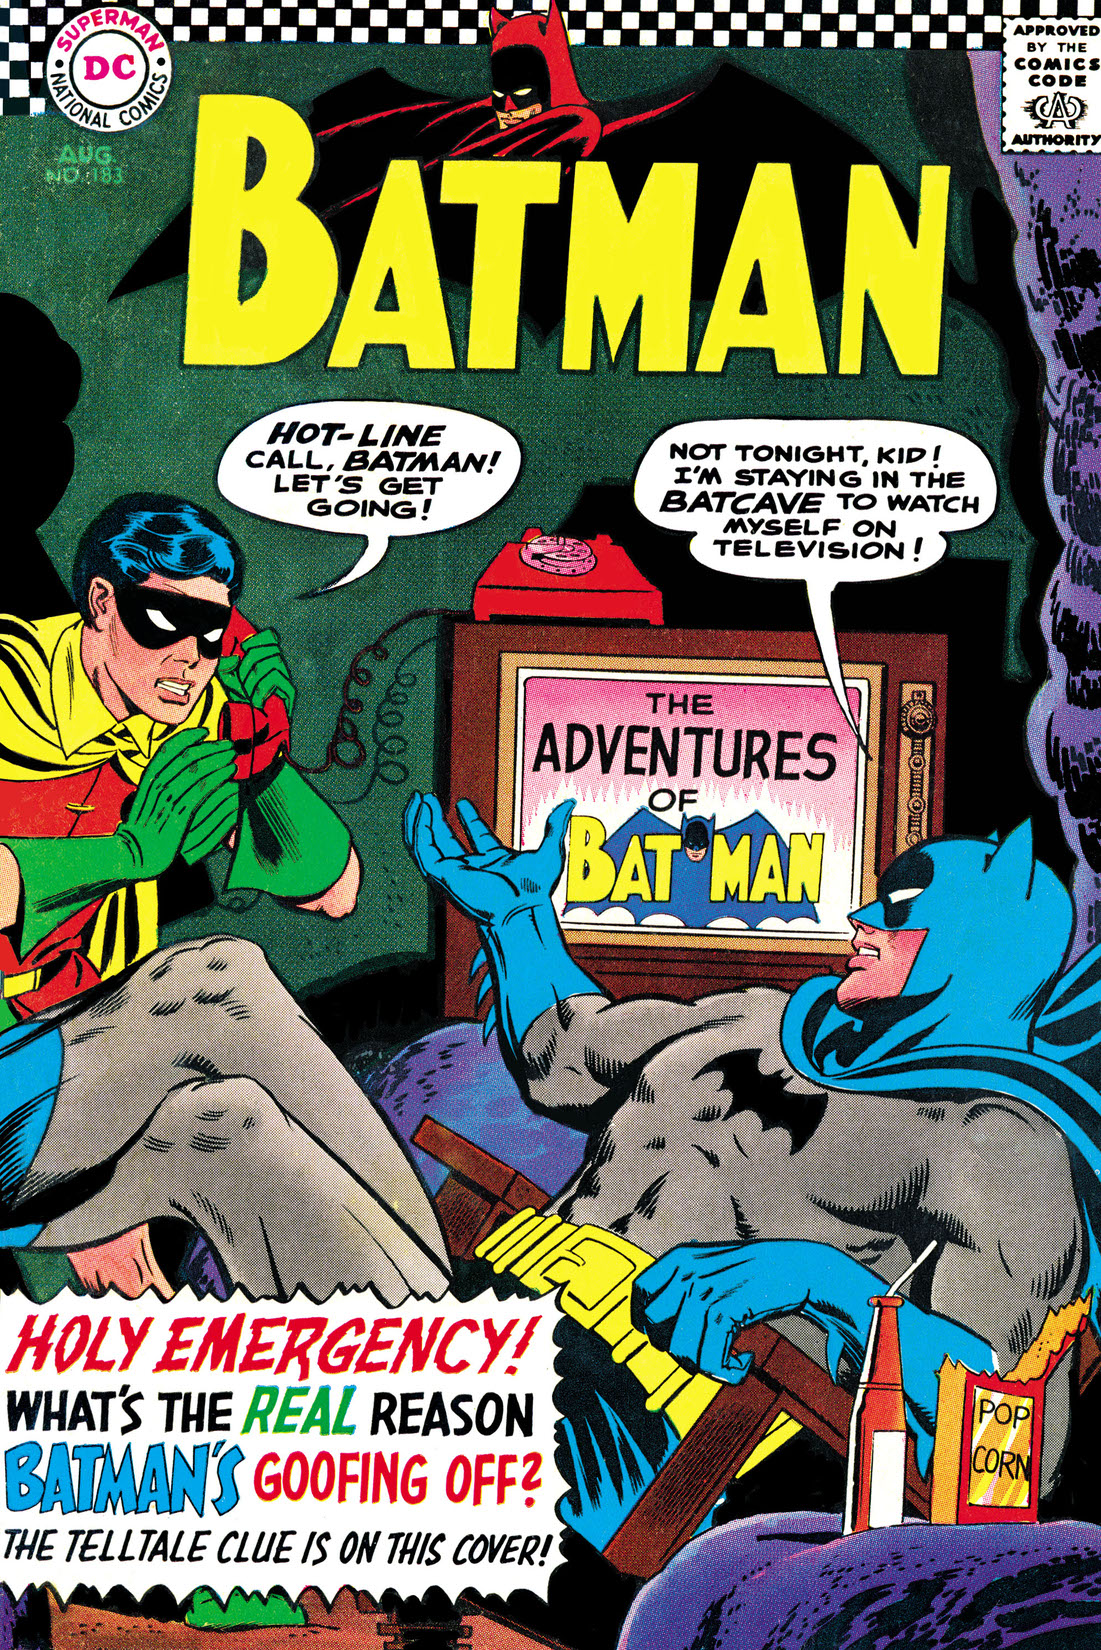 Batman (1940-) #183 preview images